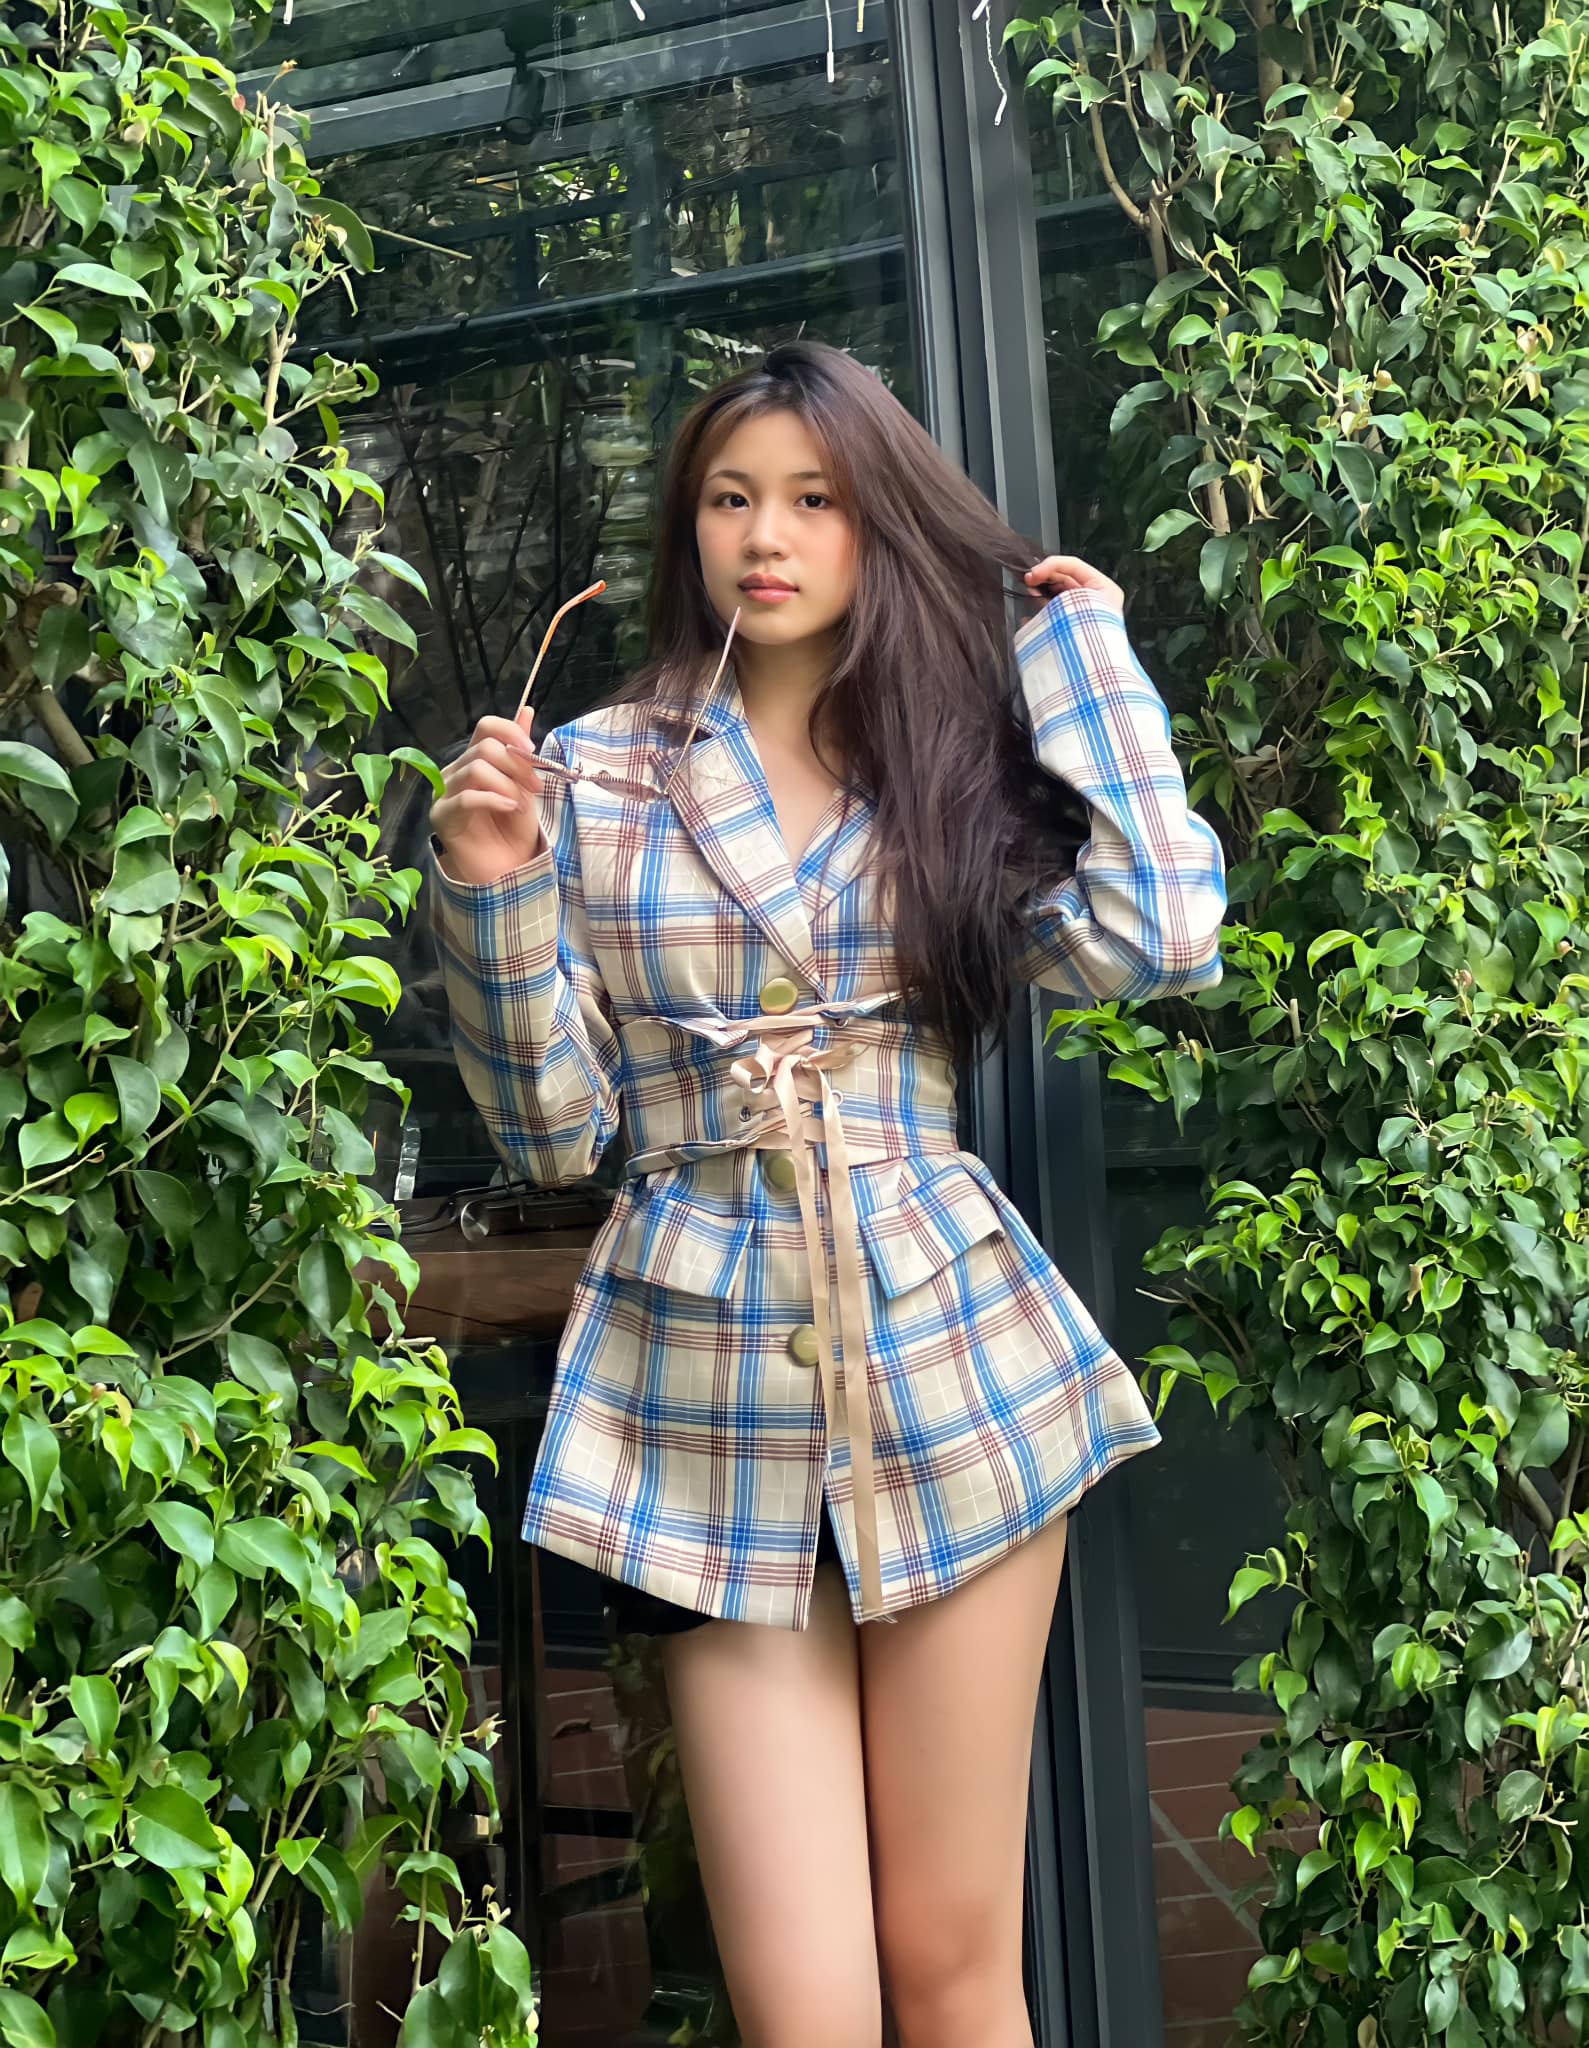 Ái nữ 17 tuổi nhà Lưu Thiên Hương chụp hình ở bụi cây góc vườn vẫn xinh đẹp khó rời mắt - Ảnh 5